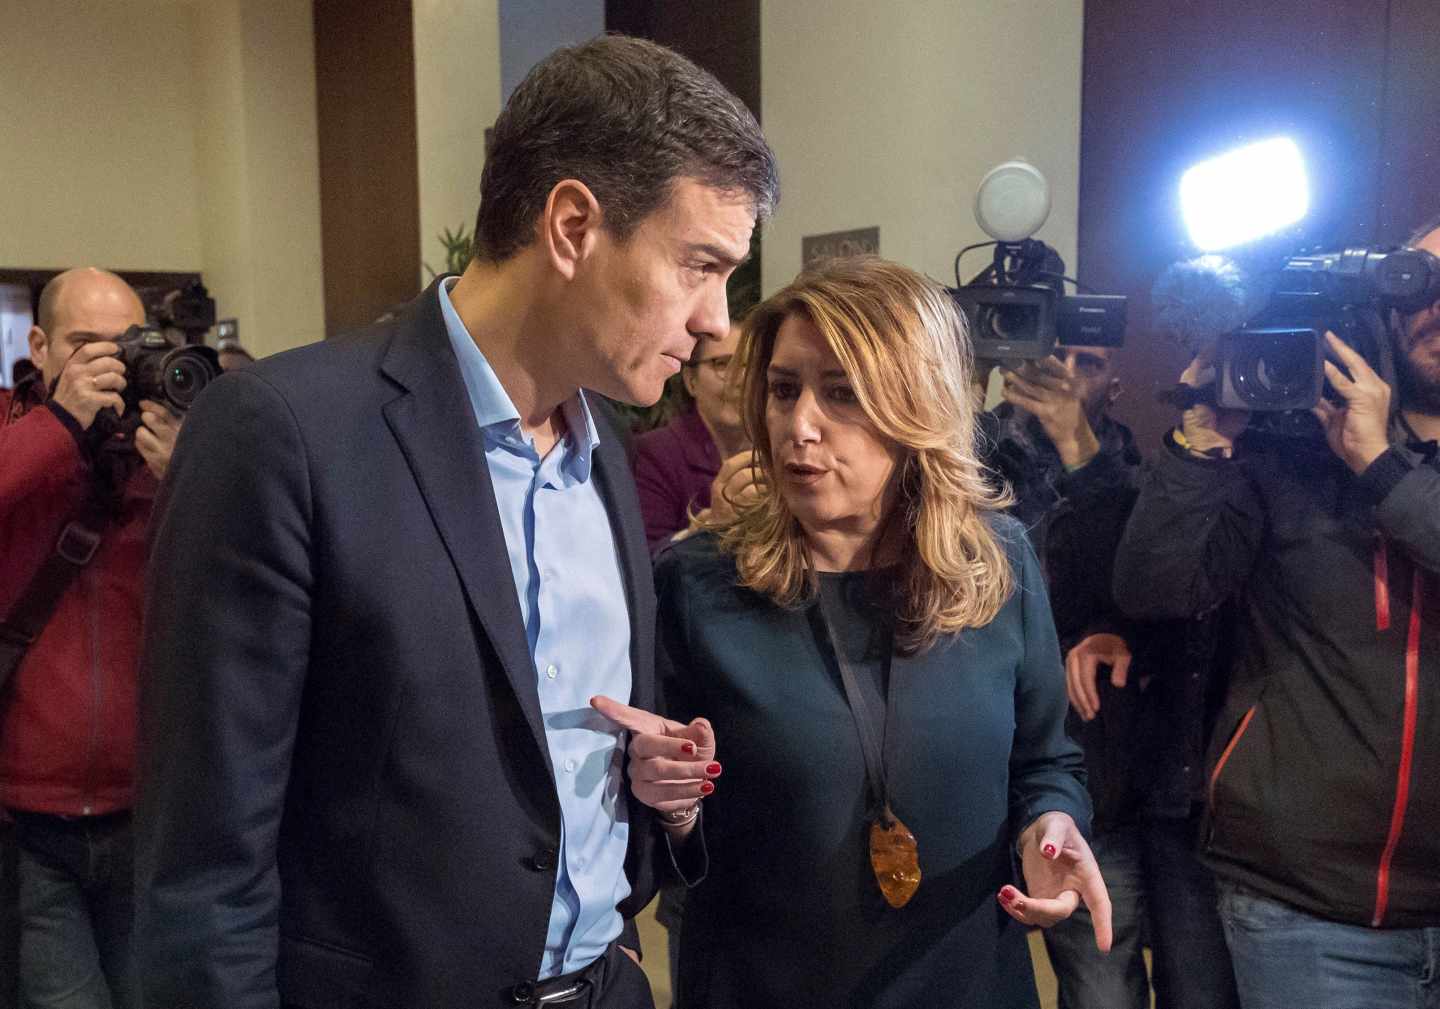 Los reproches entre Sánchez y Díaz tras su reunión: ella fue "frozen" y él "inconsistente"